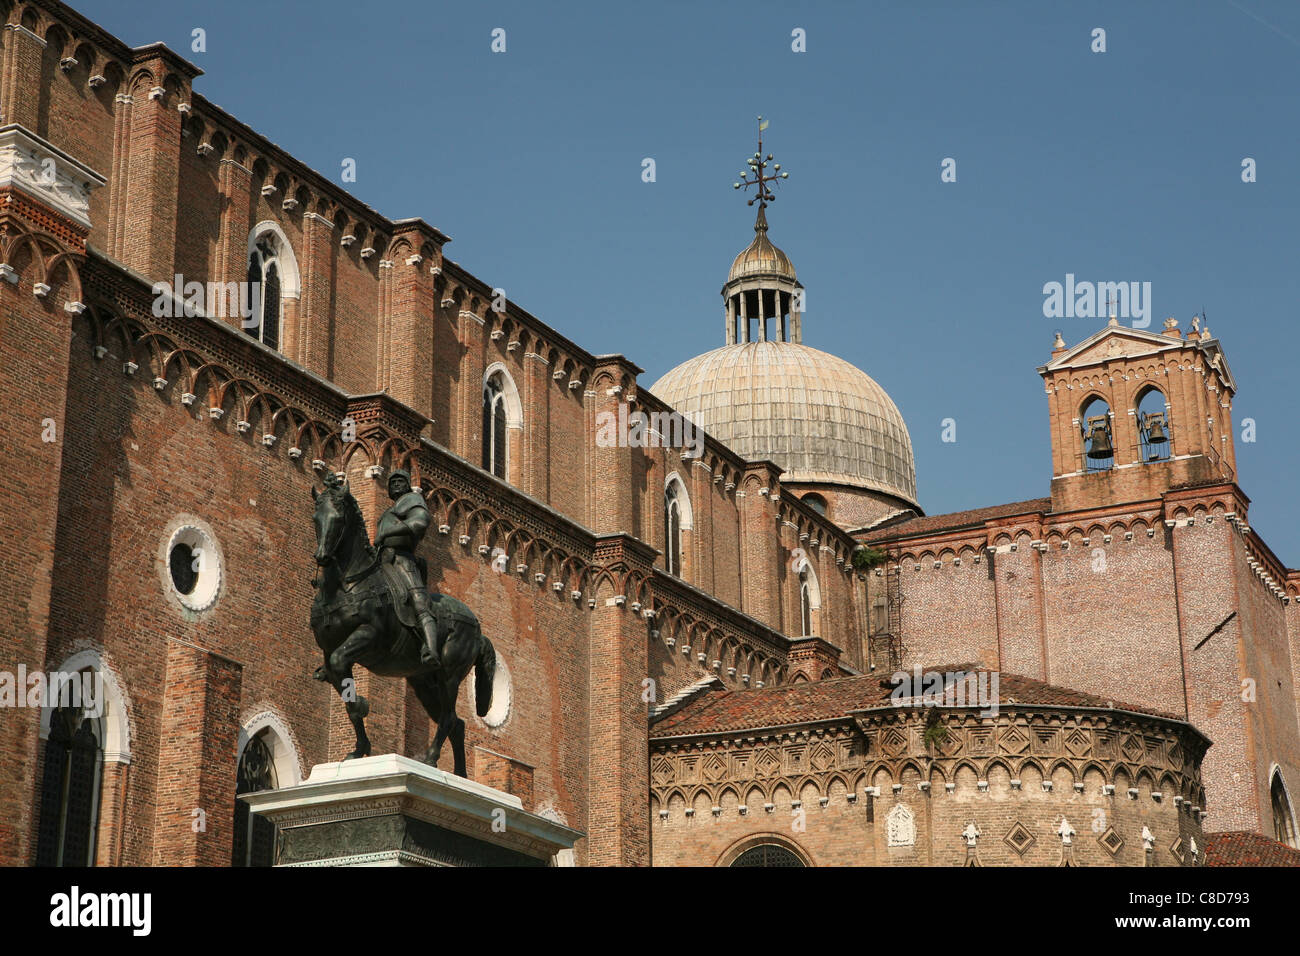 Equestrian statue of Bartolomeo Colleoni by Verrocchio at the Campo SS Giovanni e Paolo in Venice, Italy. Stock Photo